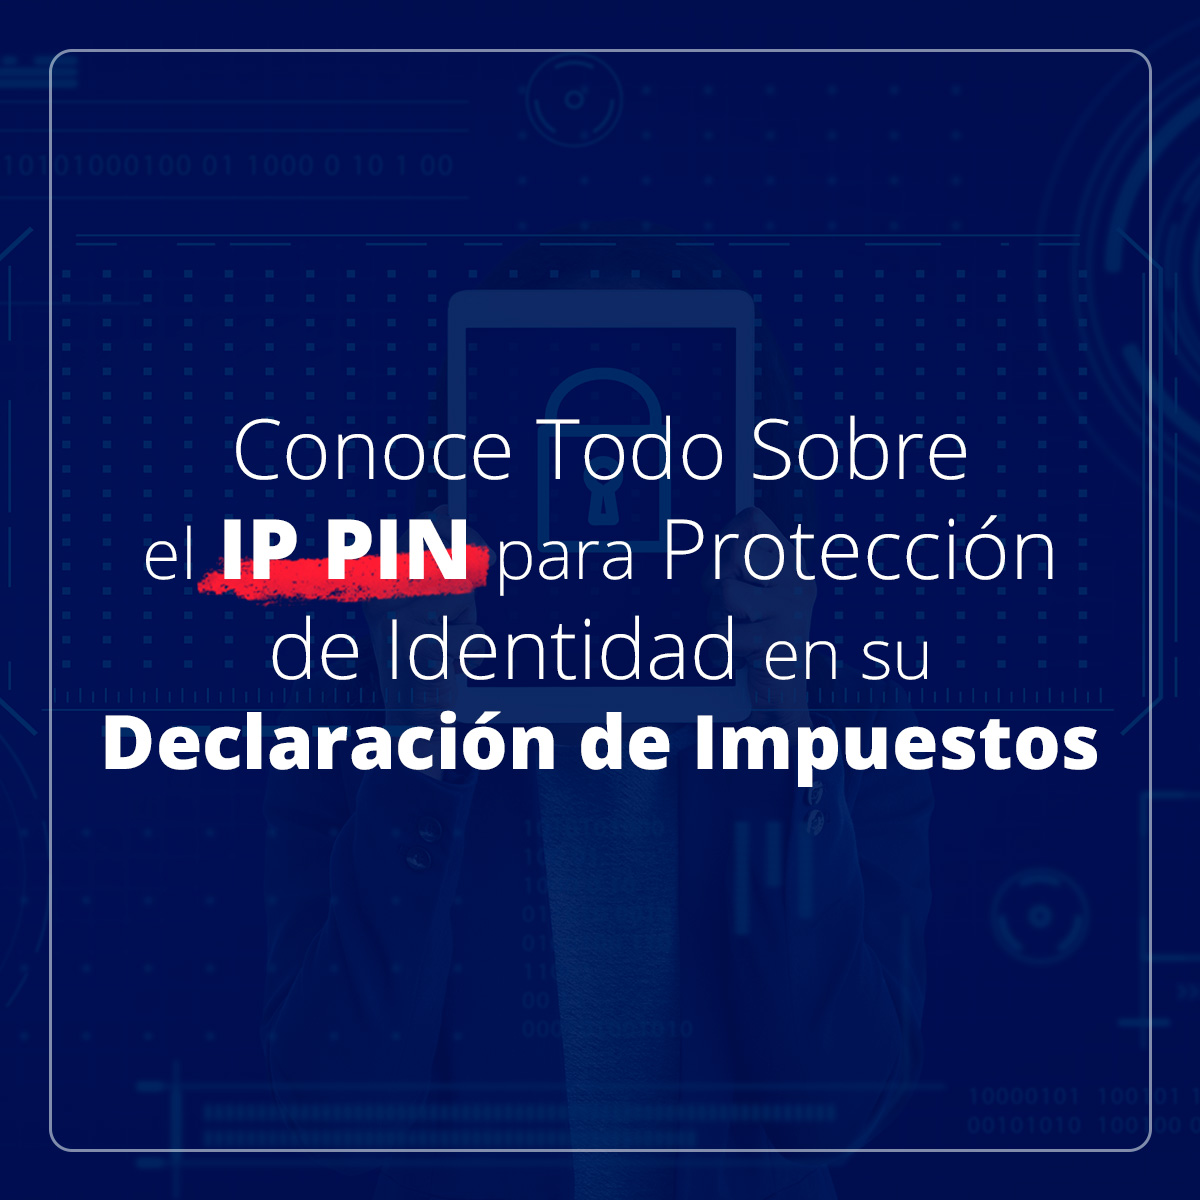 Conozca Todo Sobre el IP PIN para Protección de Identidad en su